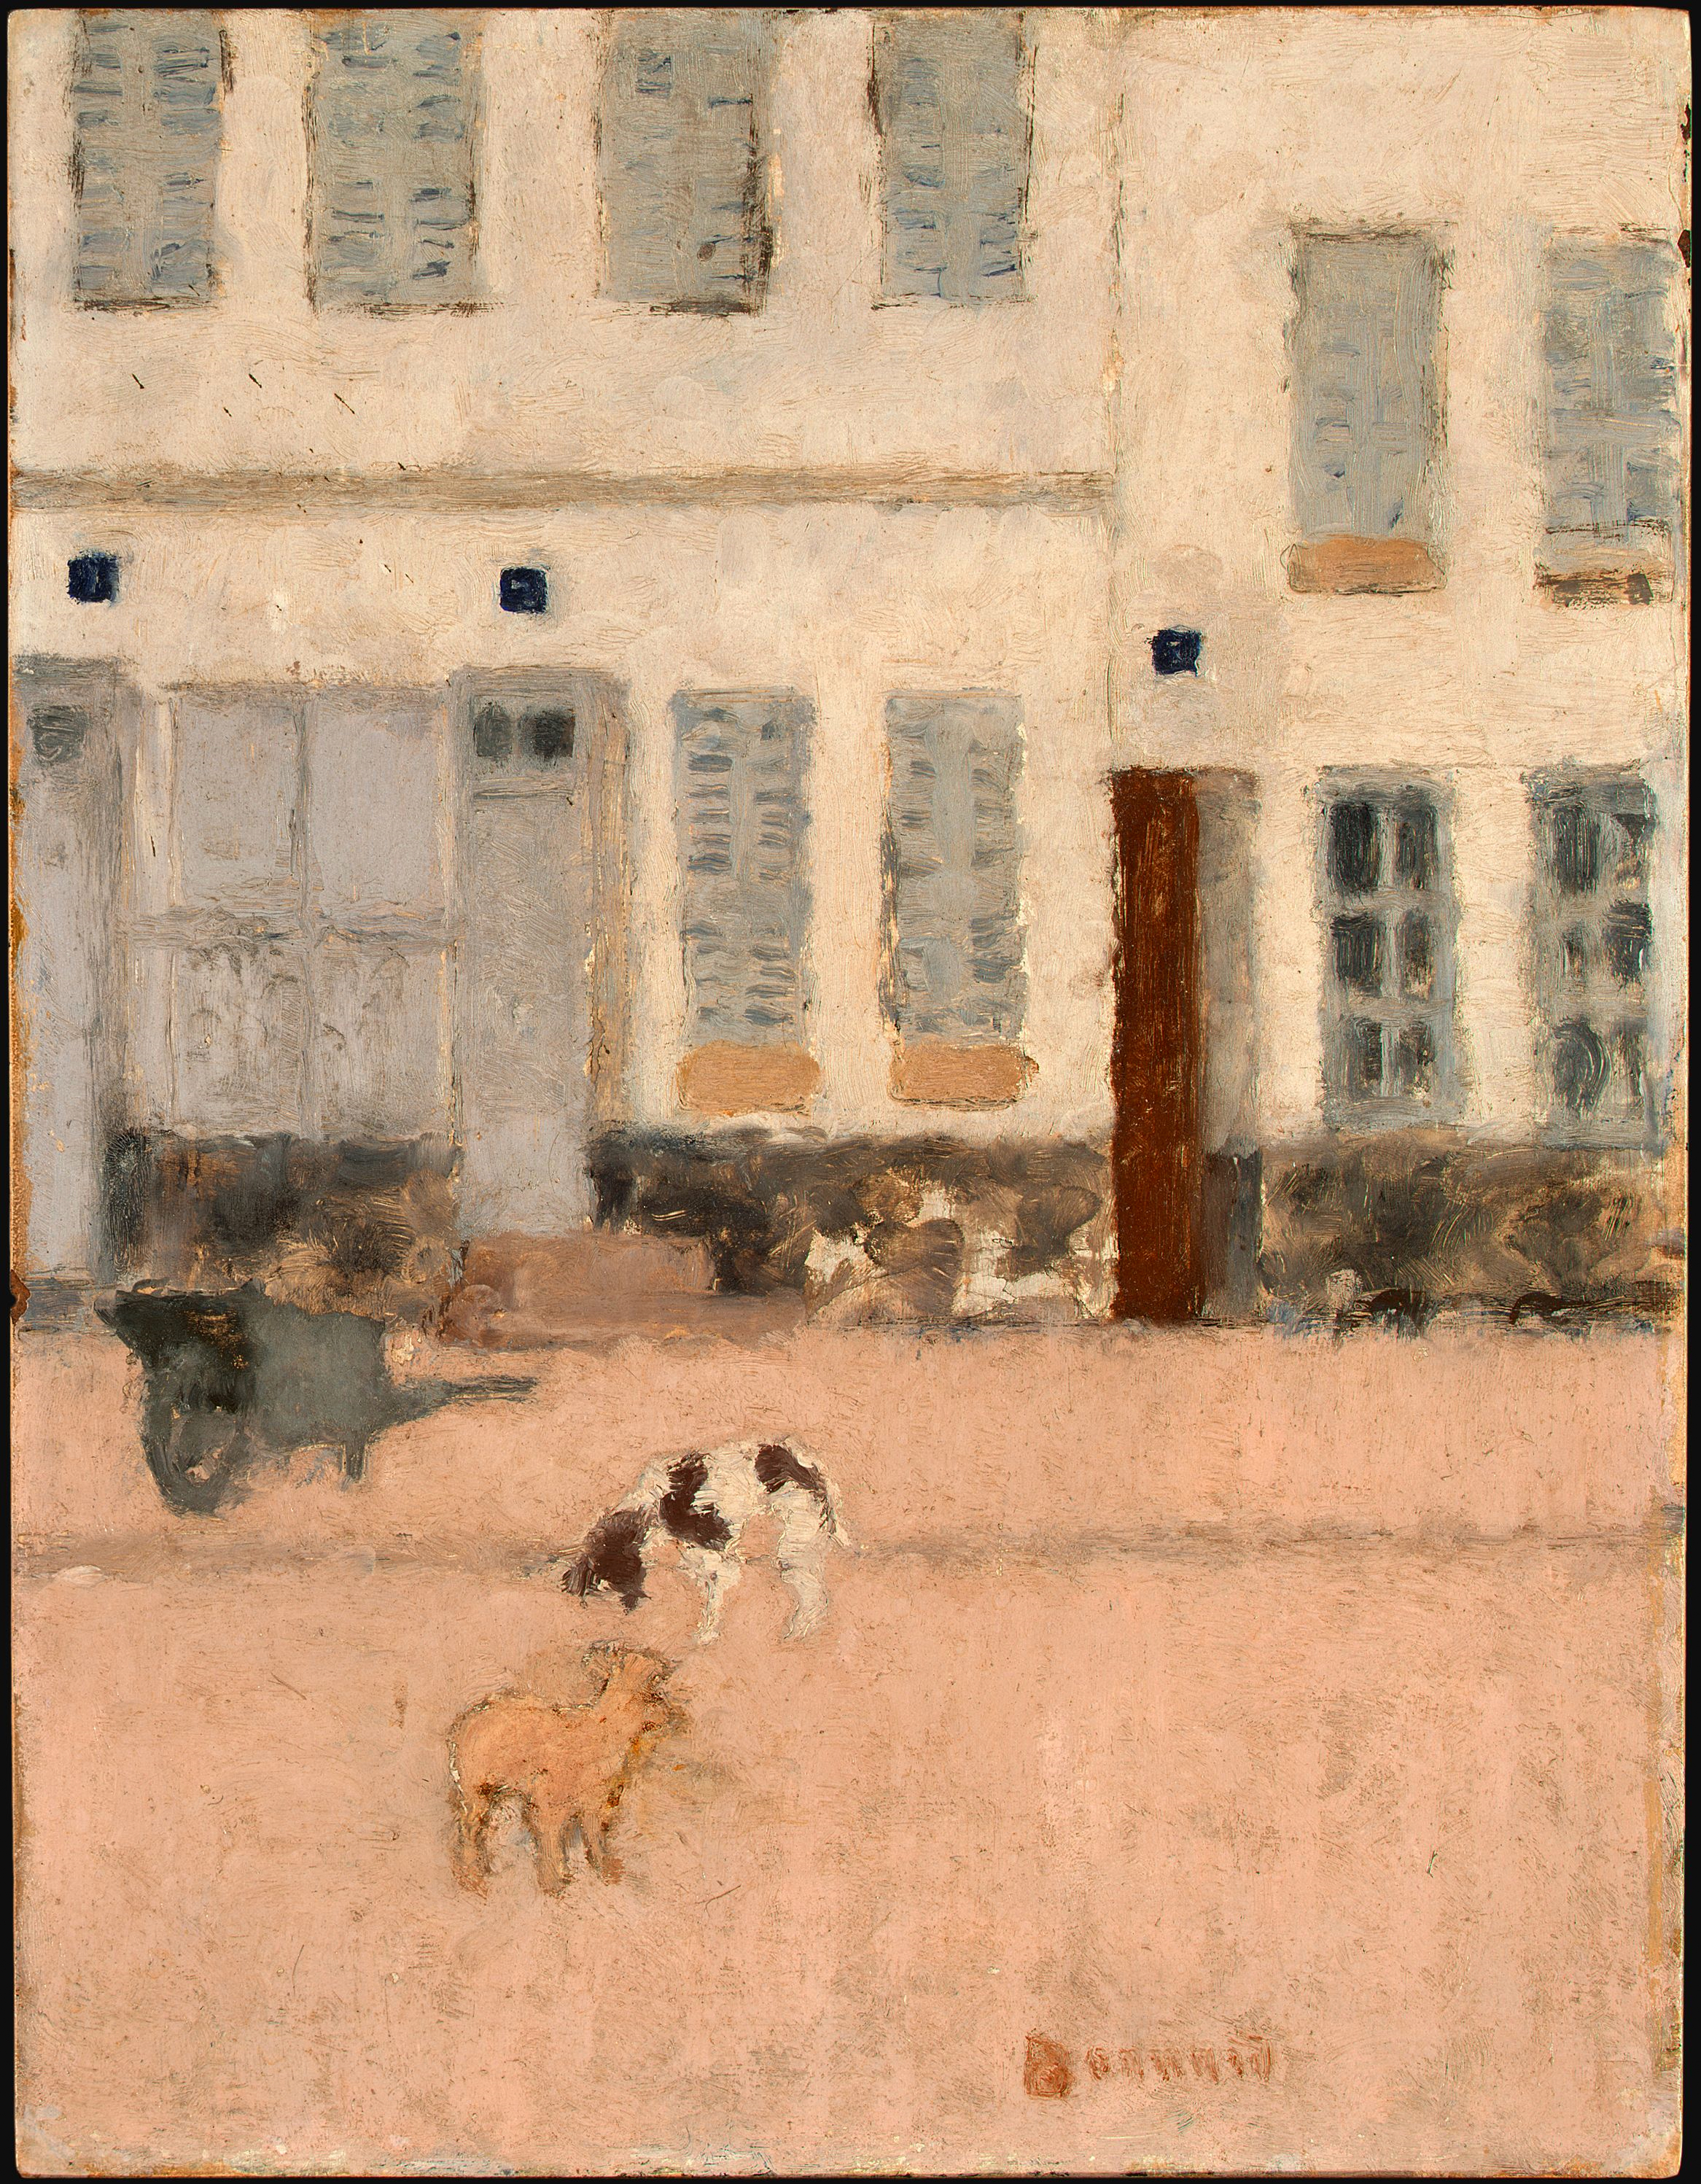 兩隻狗在一條荒蕪的街道上 by Pierre Bonnard - 約 1894 年 - 35.1 x 27 釐米 